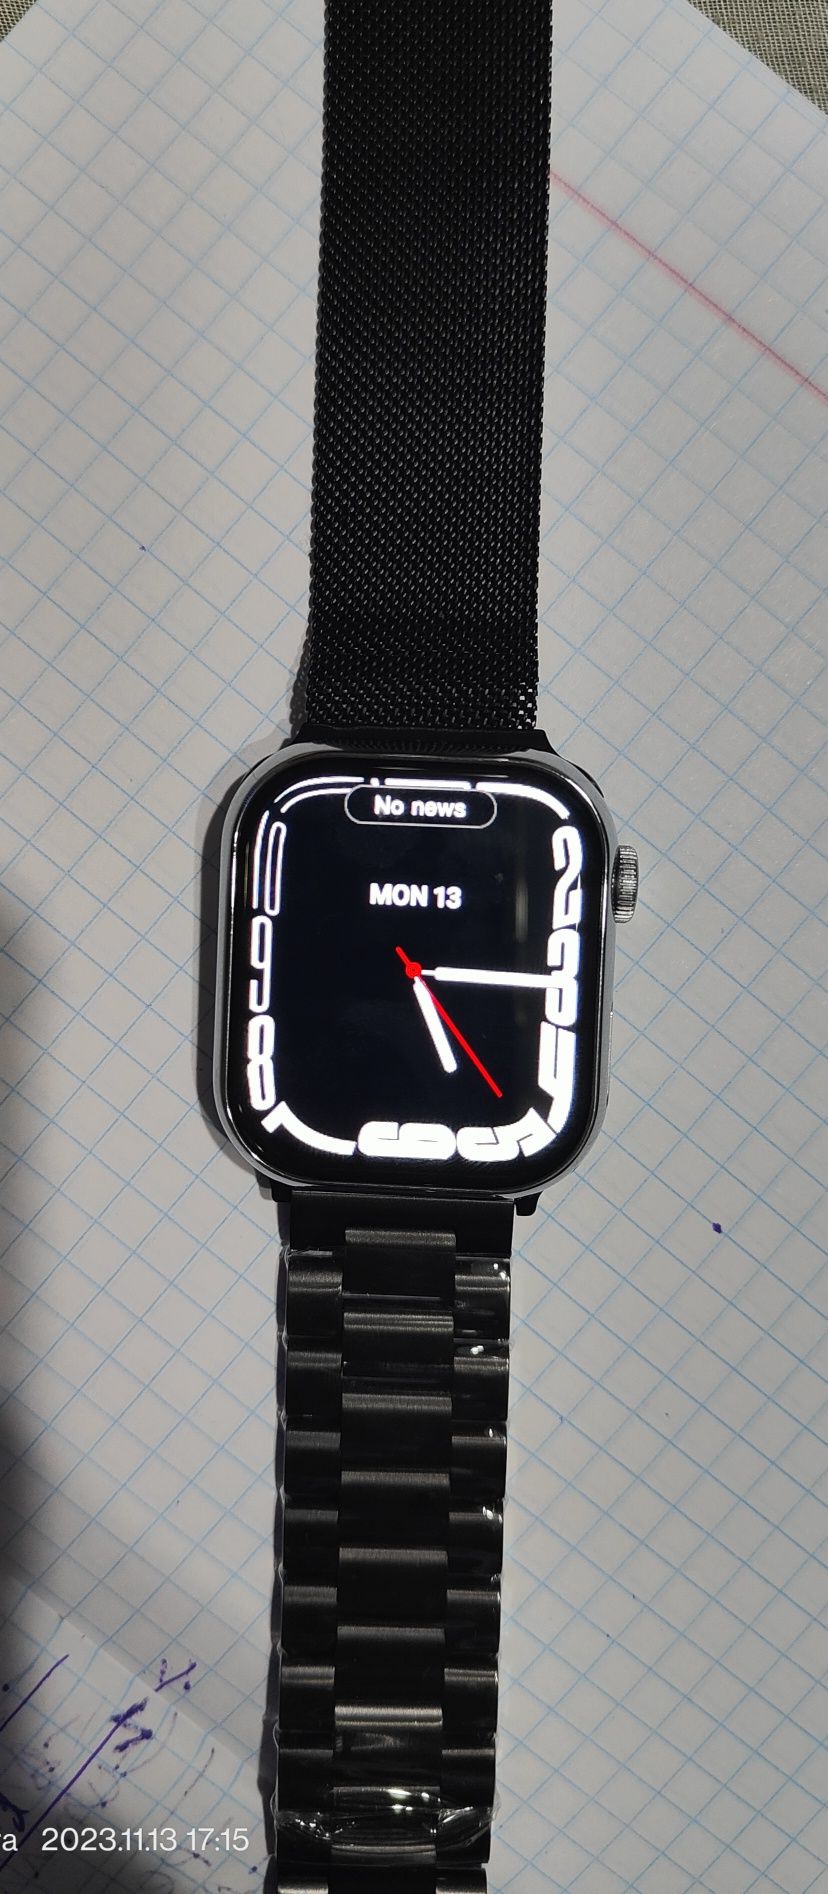 Браслеты  для Apple watch смарт часов Миланская петля